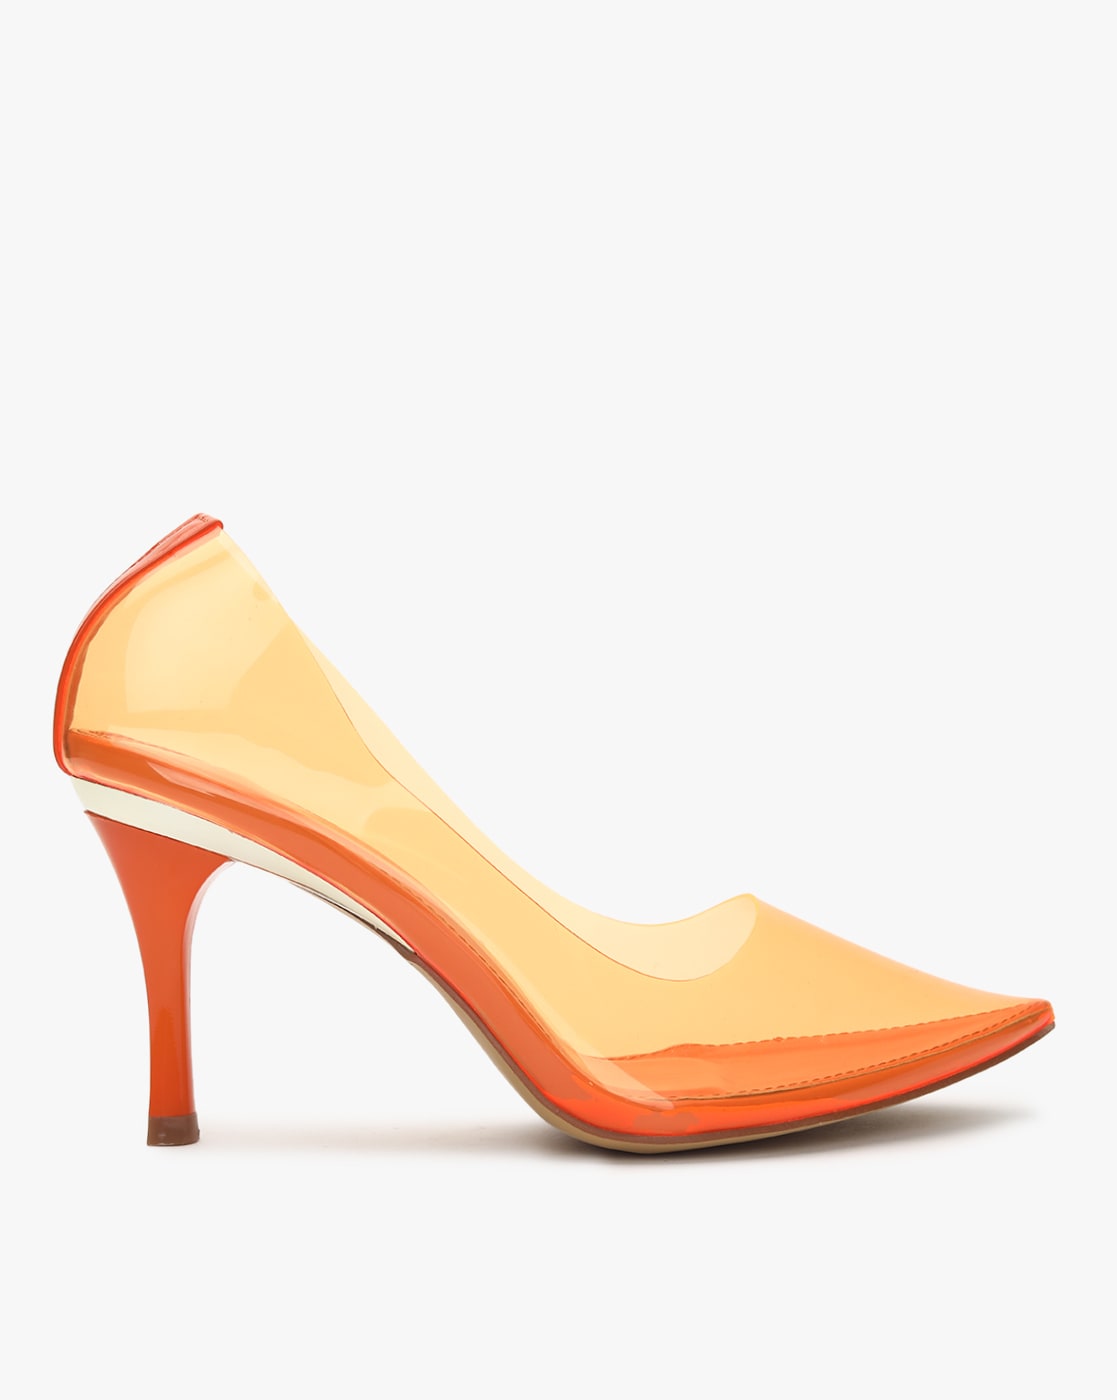 High heel pumps from Valli Orange - KeeShoes